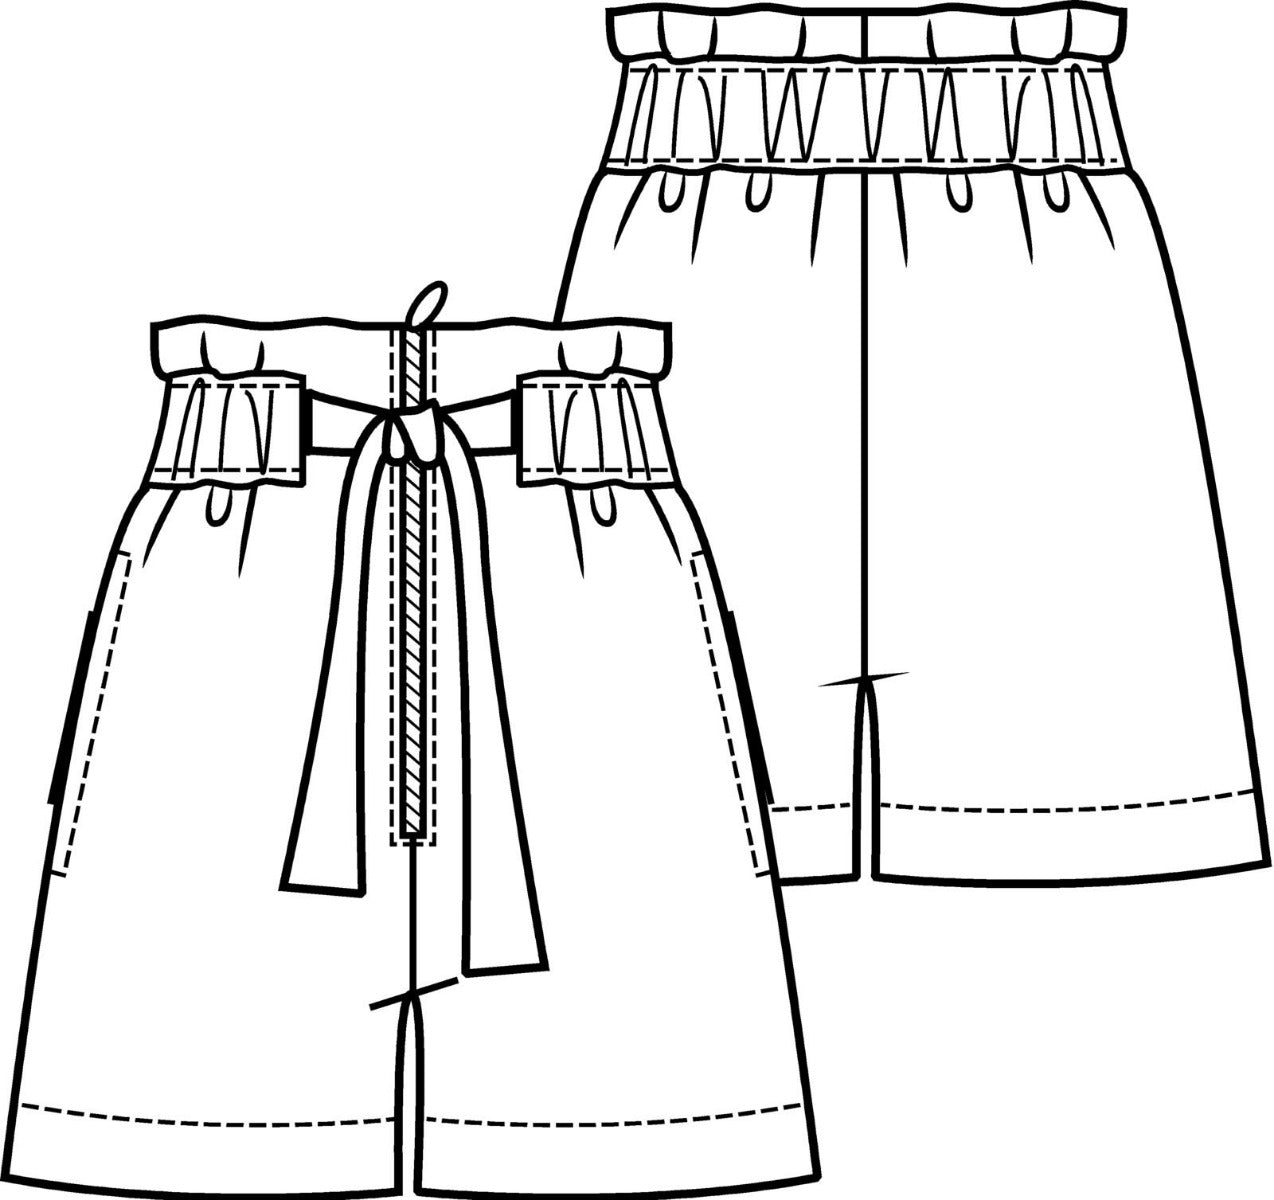 Schnitt 0719 – 5 Shorts